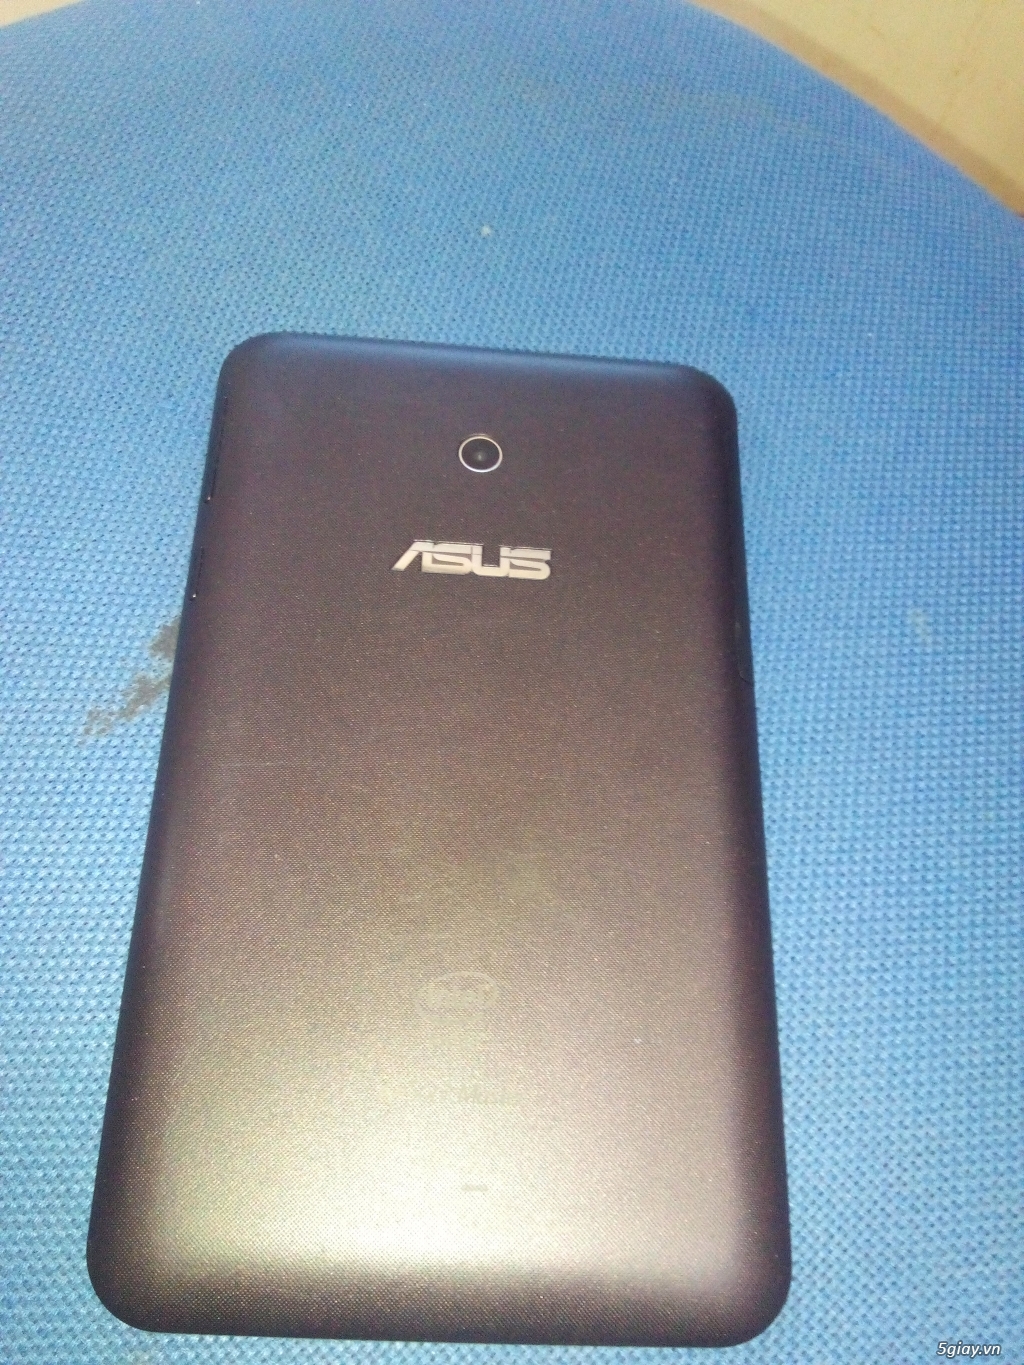 Cần bán điện thoại Asus notepad 7 K012,2 sim 2 sóng,3G ,wifi tốt. - 3